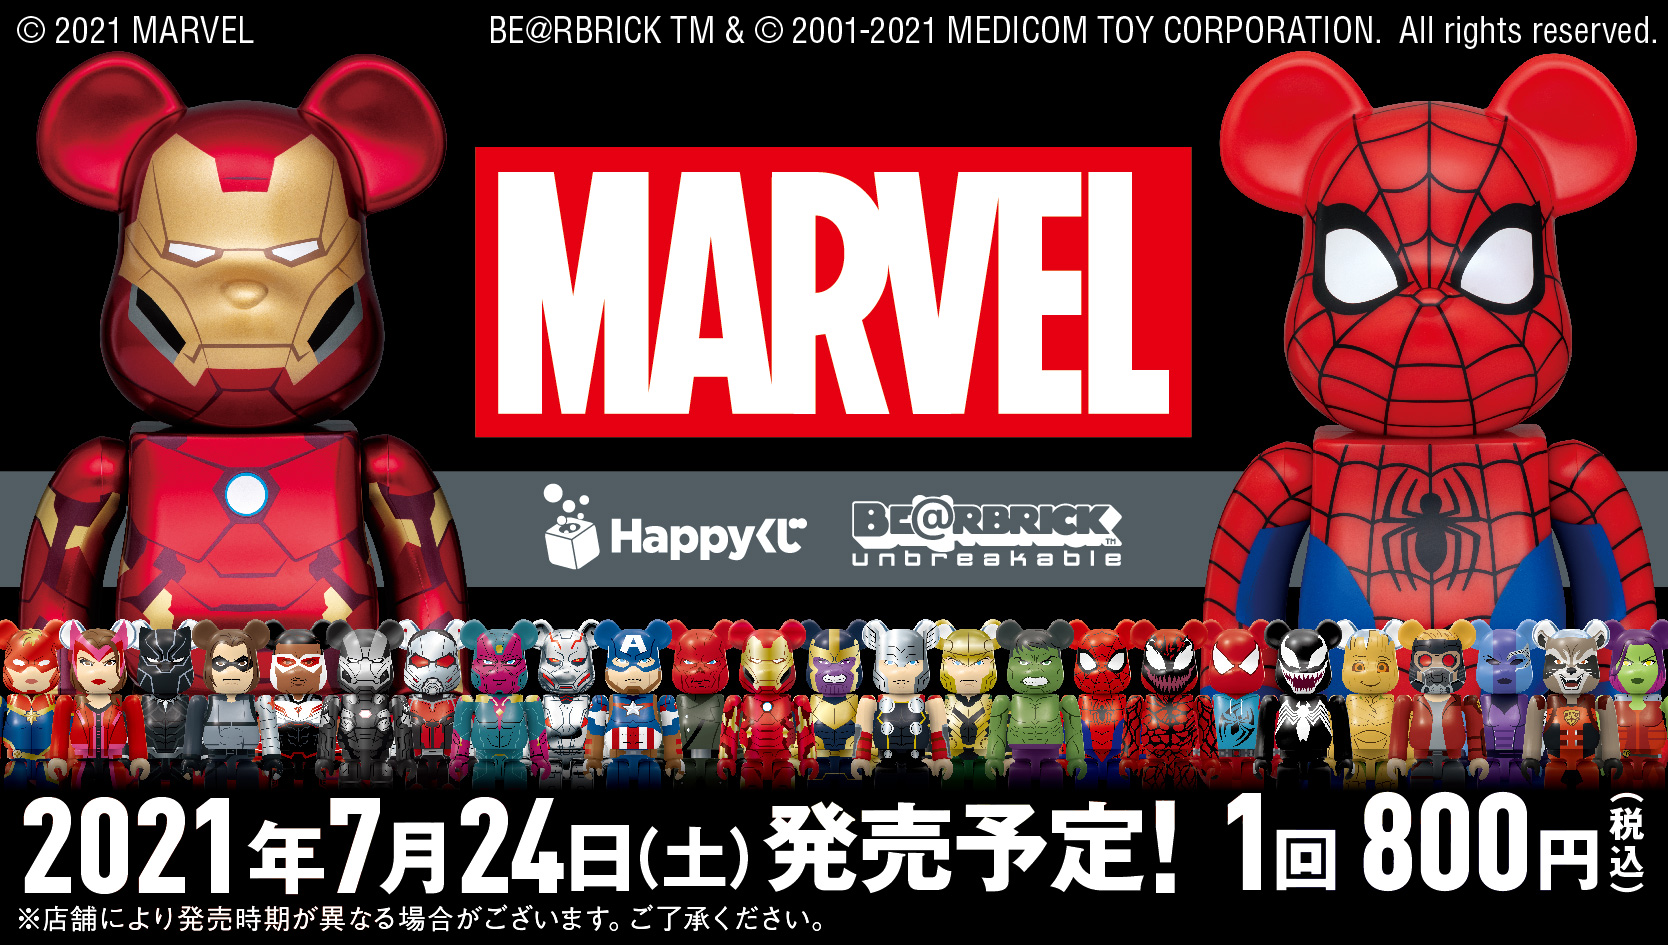 ハッピーくじ MARVEL BE@RBRICK SP賞 ラストワン賞 セット スパイダーマン アイアンマン 400% - www.icaten